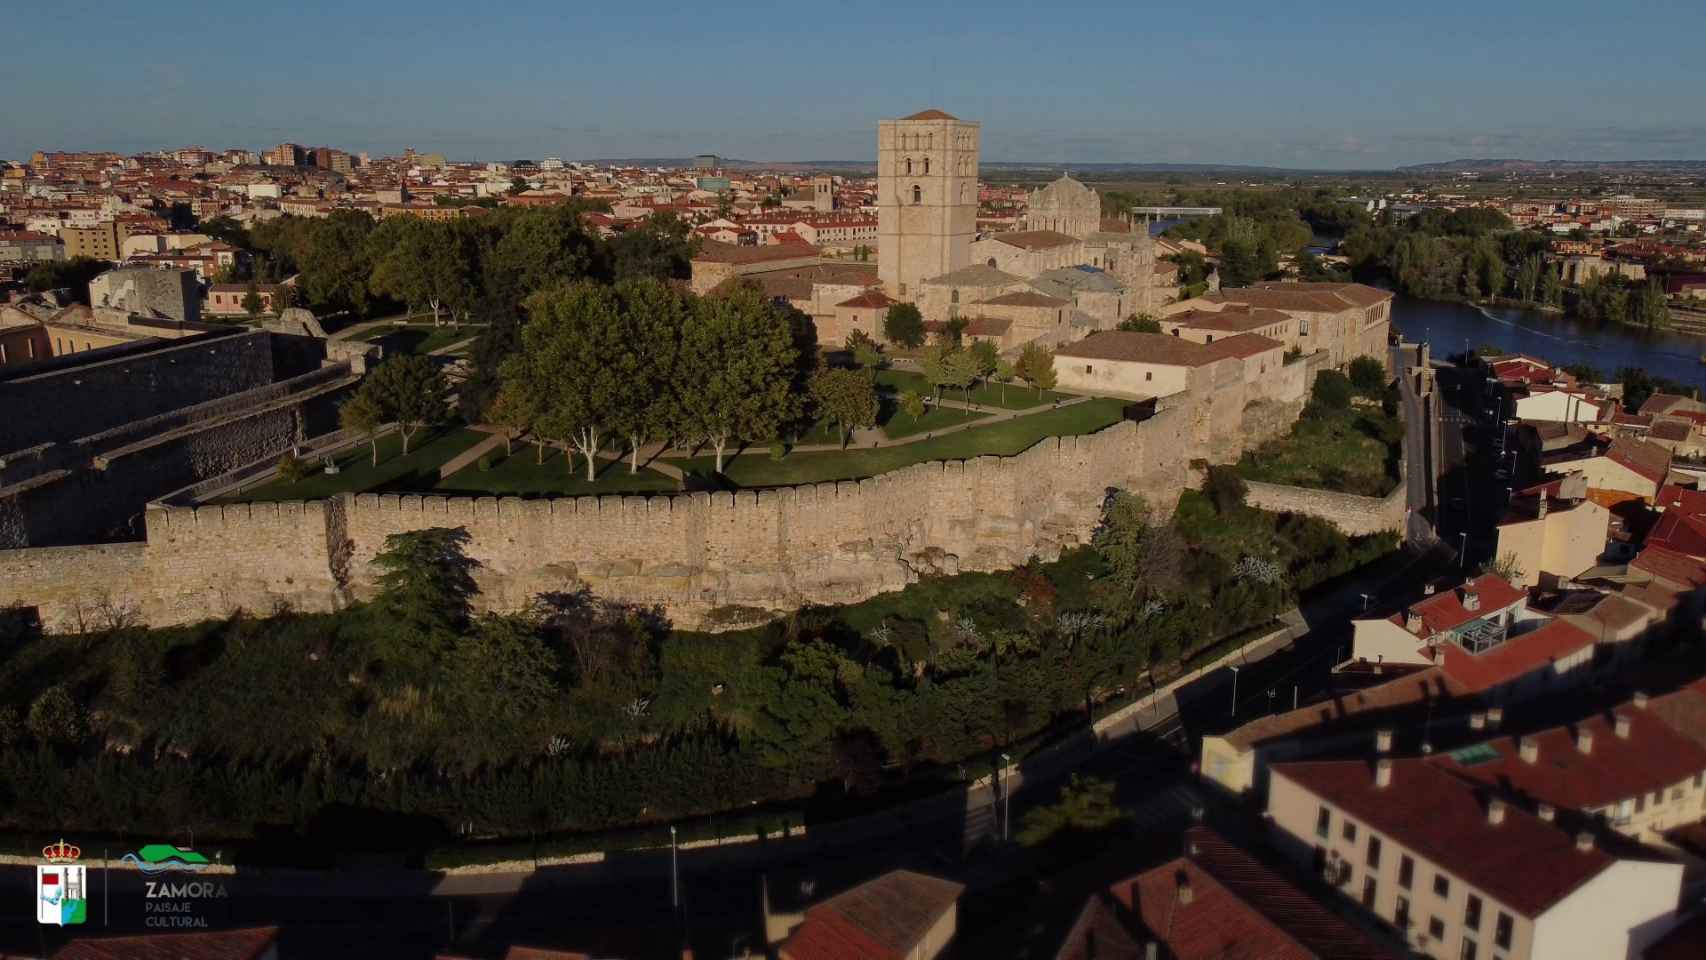 Vista aérea de la Catedral de Zamora y el recinto amurallado, sobre la atalaya del Duero